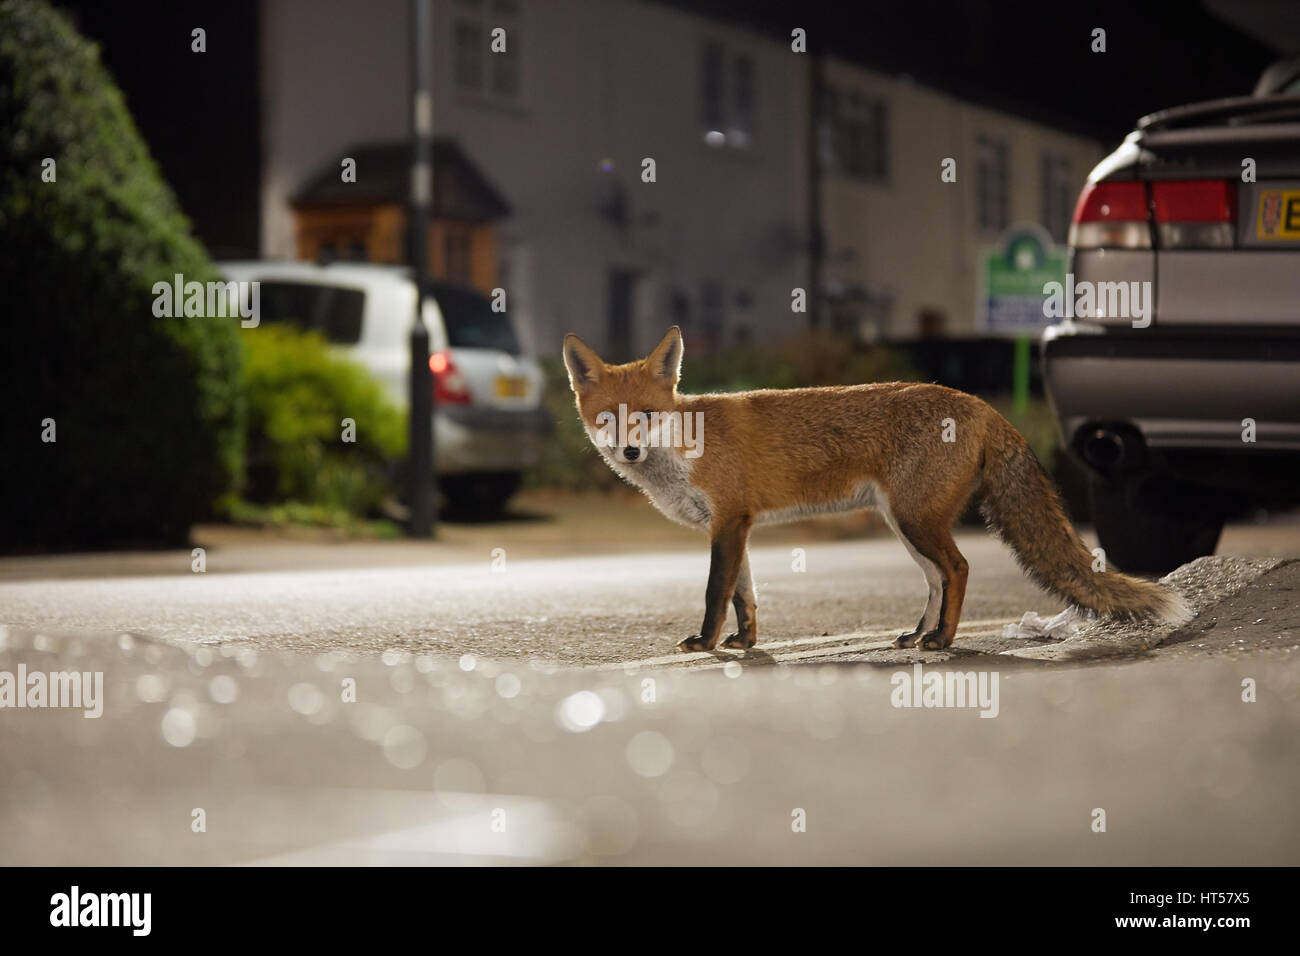 Urban fox at night Stock Photo